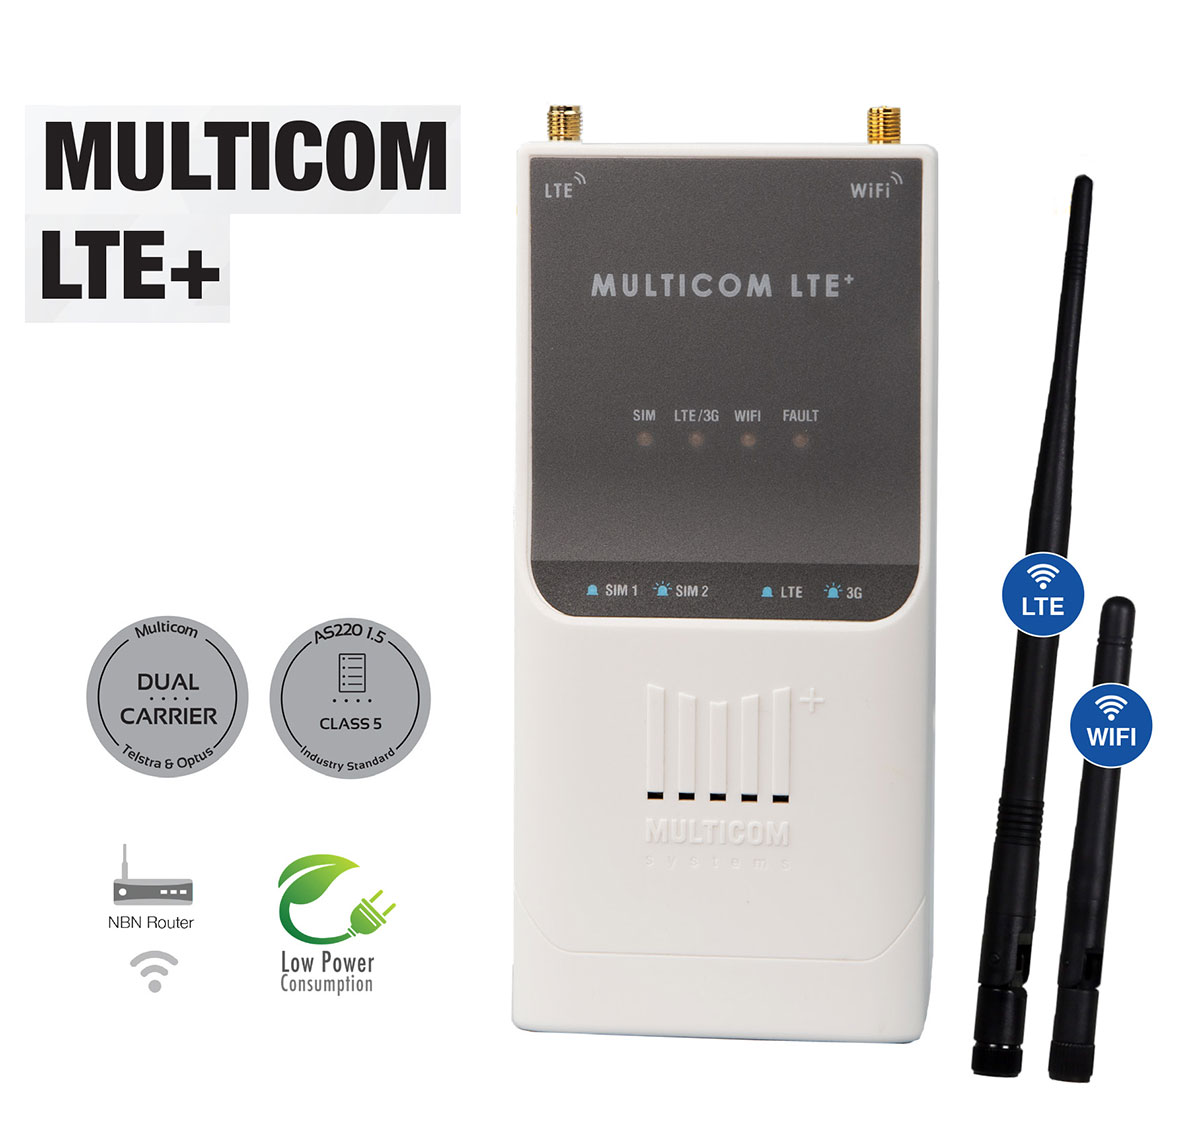 Multicomm LTE+